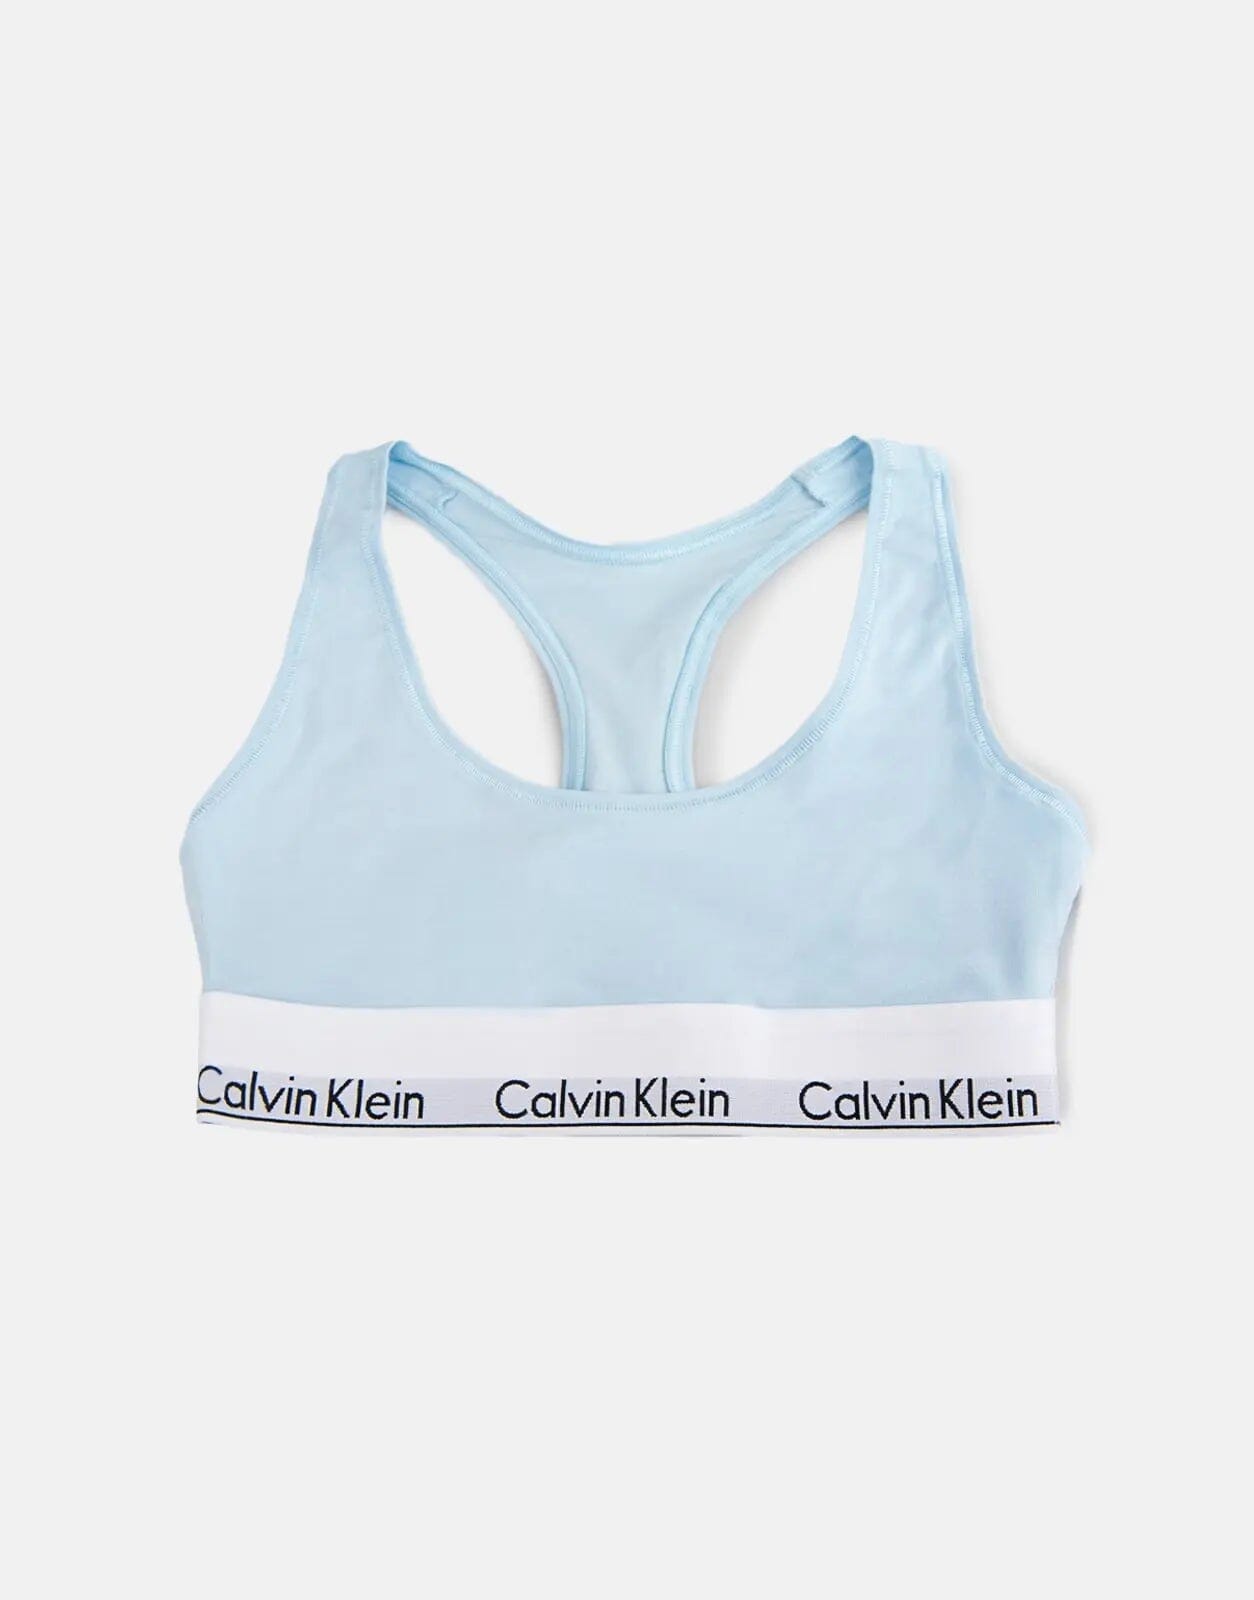 Calvin Klein Unlined Bralette Blue Underwear - Subwear